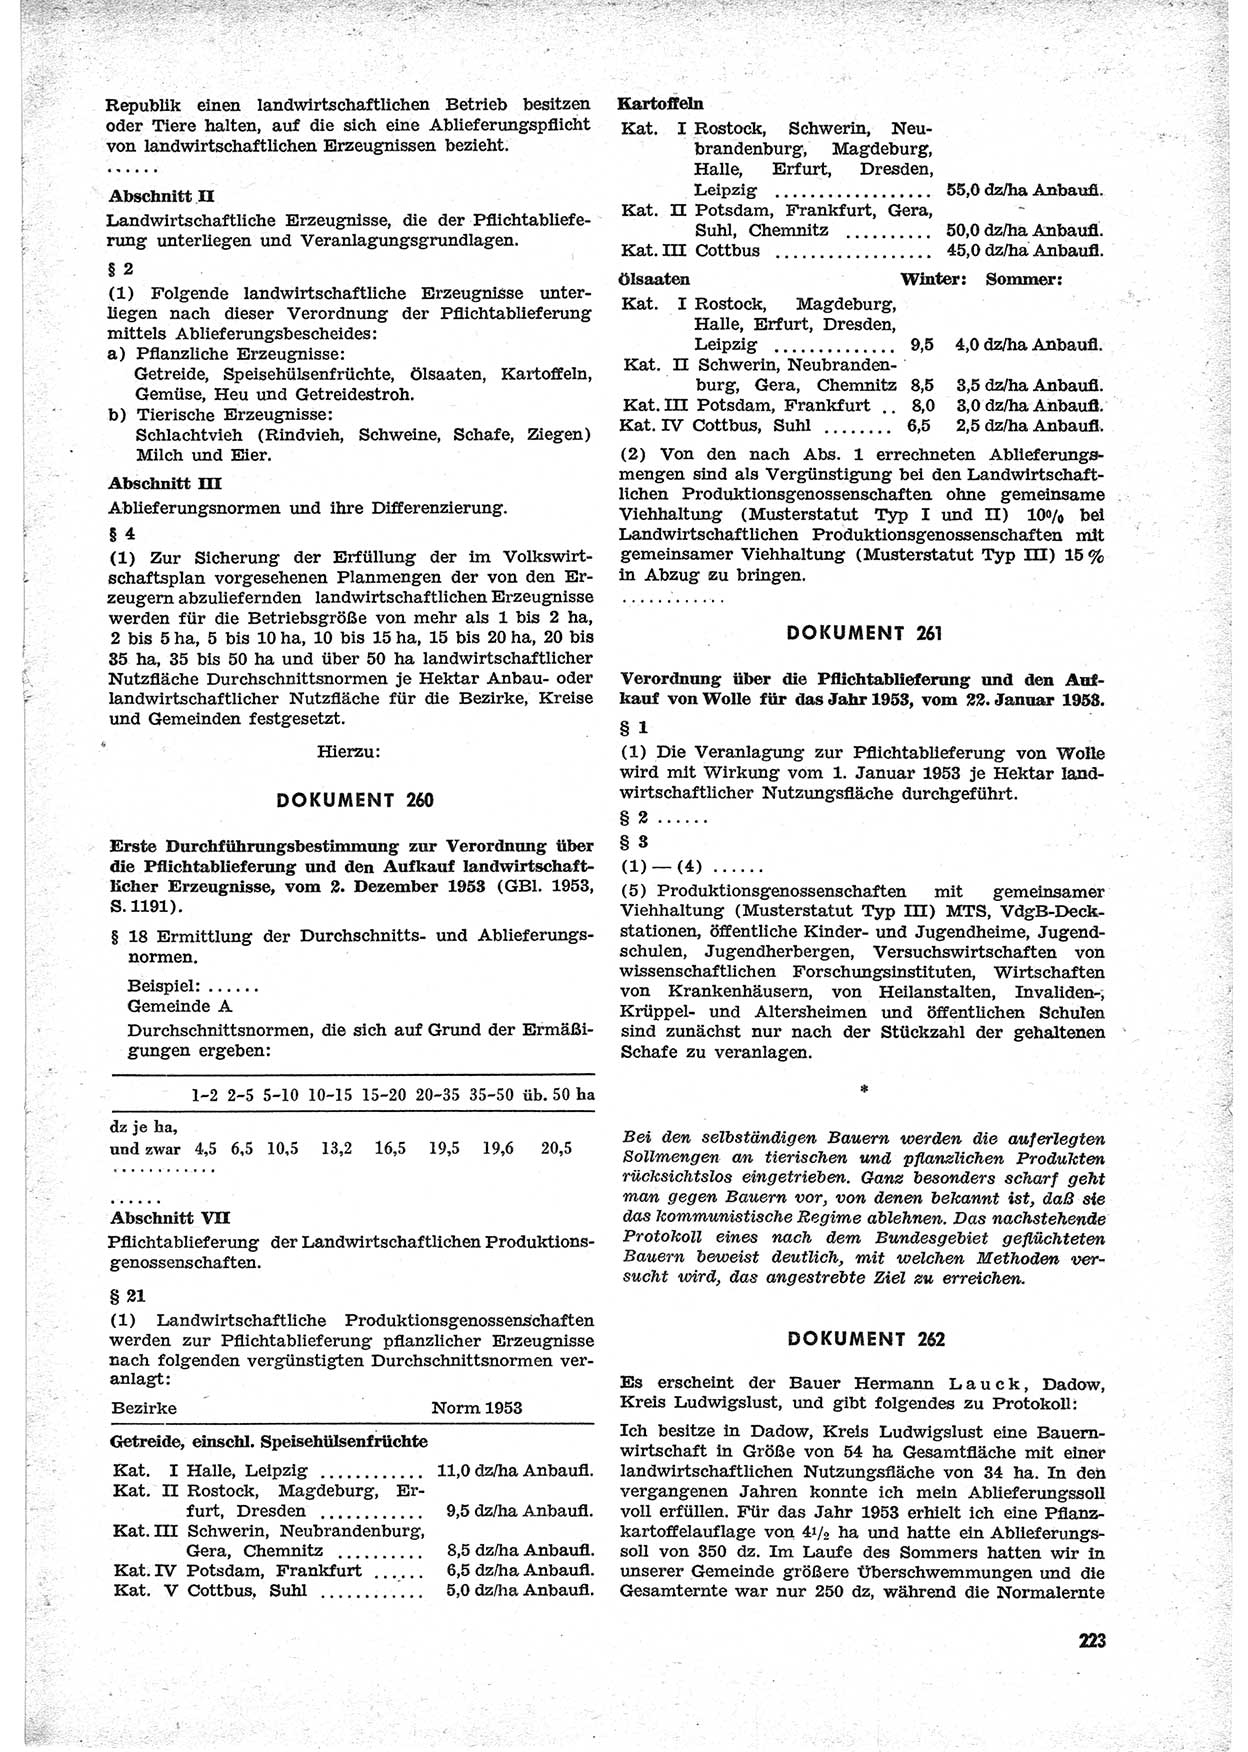 Unrecht als System, Dokumente über planmäßige Rechtsverletzungen in der Sowjetzone Deutschlands, zusammengestellt vom Untersuchungsausschuß Freiheitlicher Juristen (UFJ), Teil Ⅱ 1952-1954, herausgegeben vom Bundesministerium für gesamtdeutsche Fragen, Bonn 1955, Seite 223 (Unr. Syst. 1952-1954, S. 223)